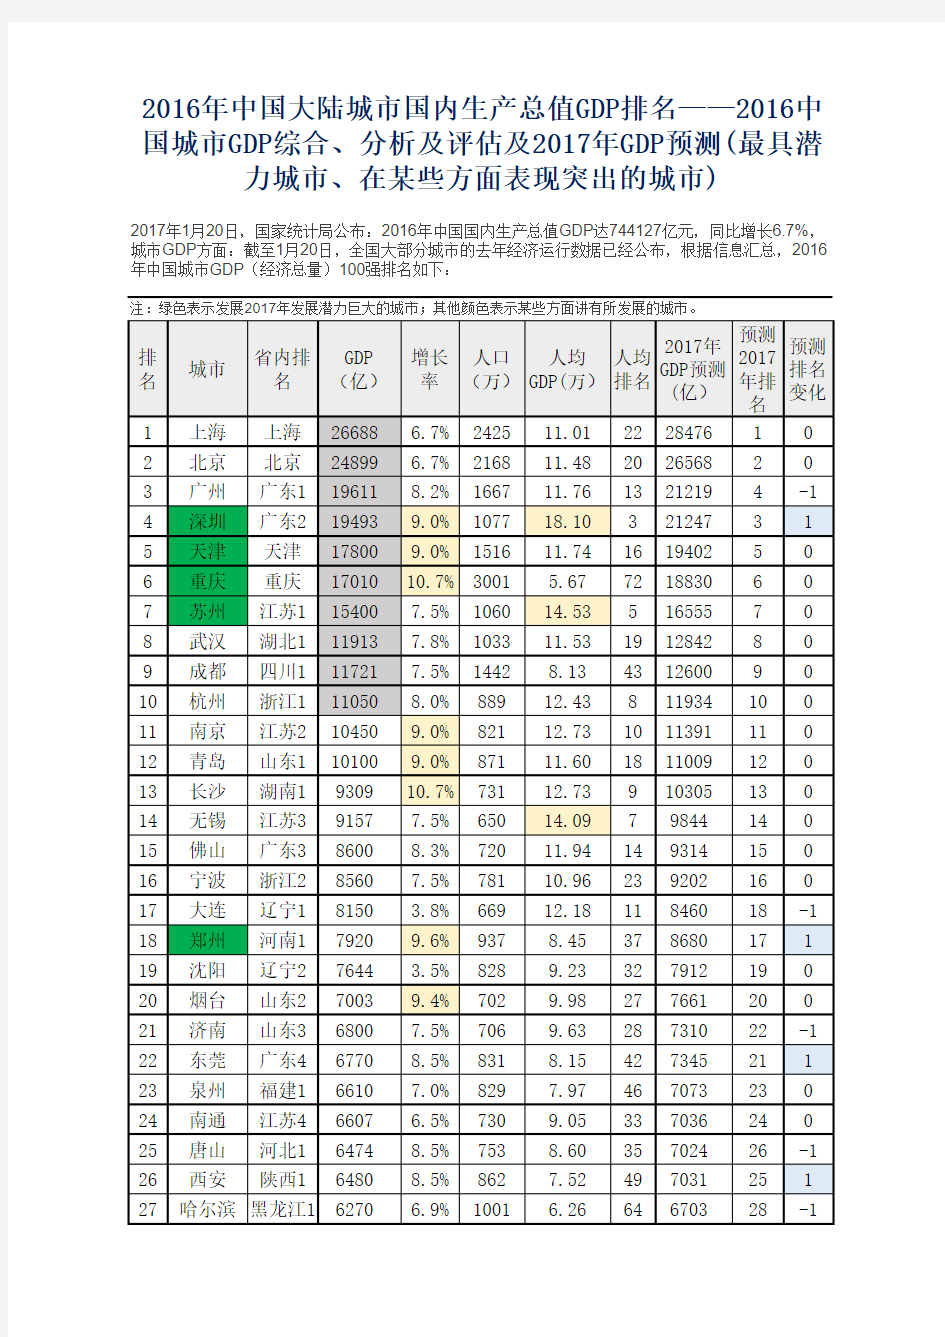 2016中国城市GDP排名、分析及评估及2017年GDP预测